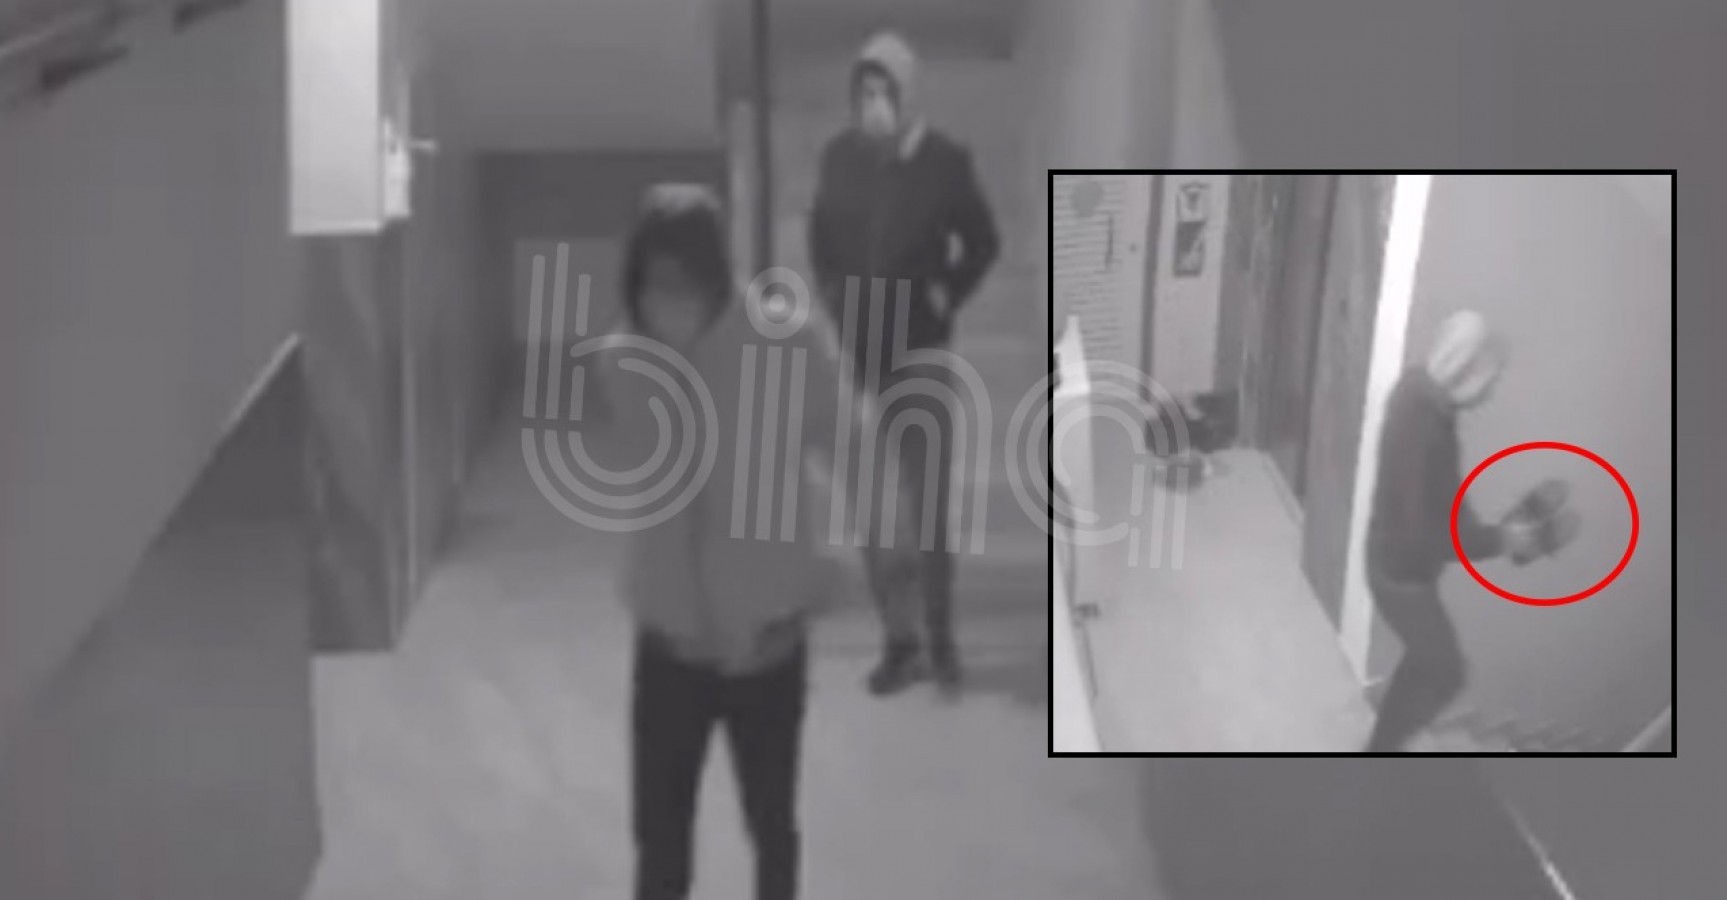 Urfa’da apartmandaki ayakkabı hırsızlığı kameraya yansıdı;